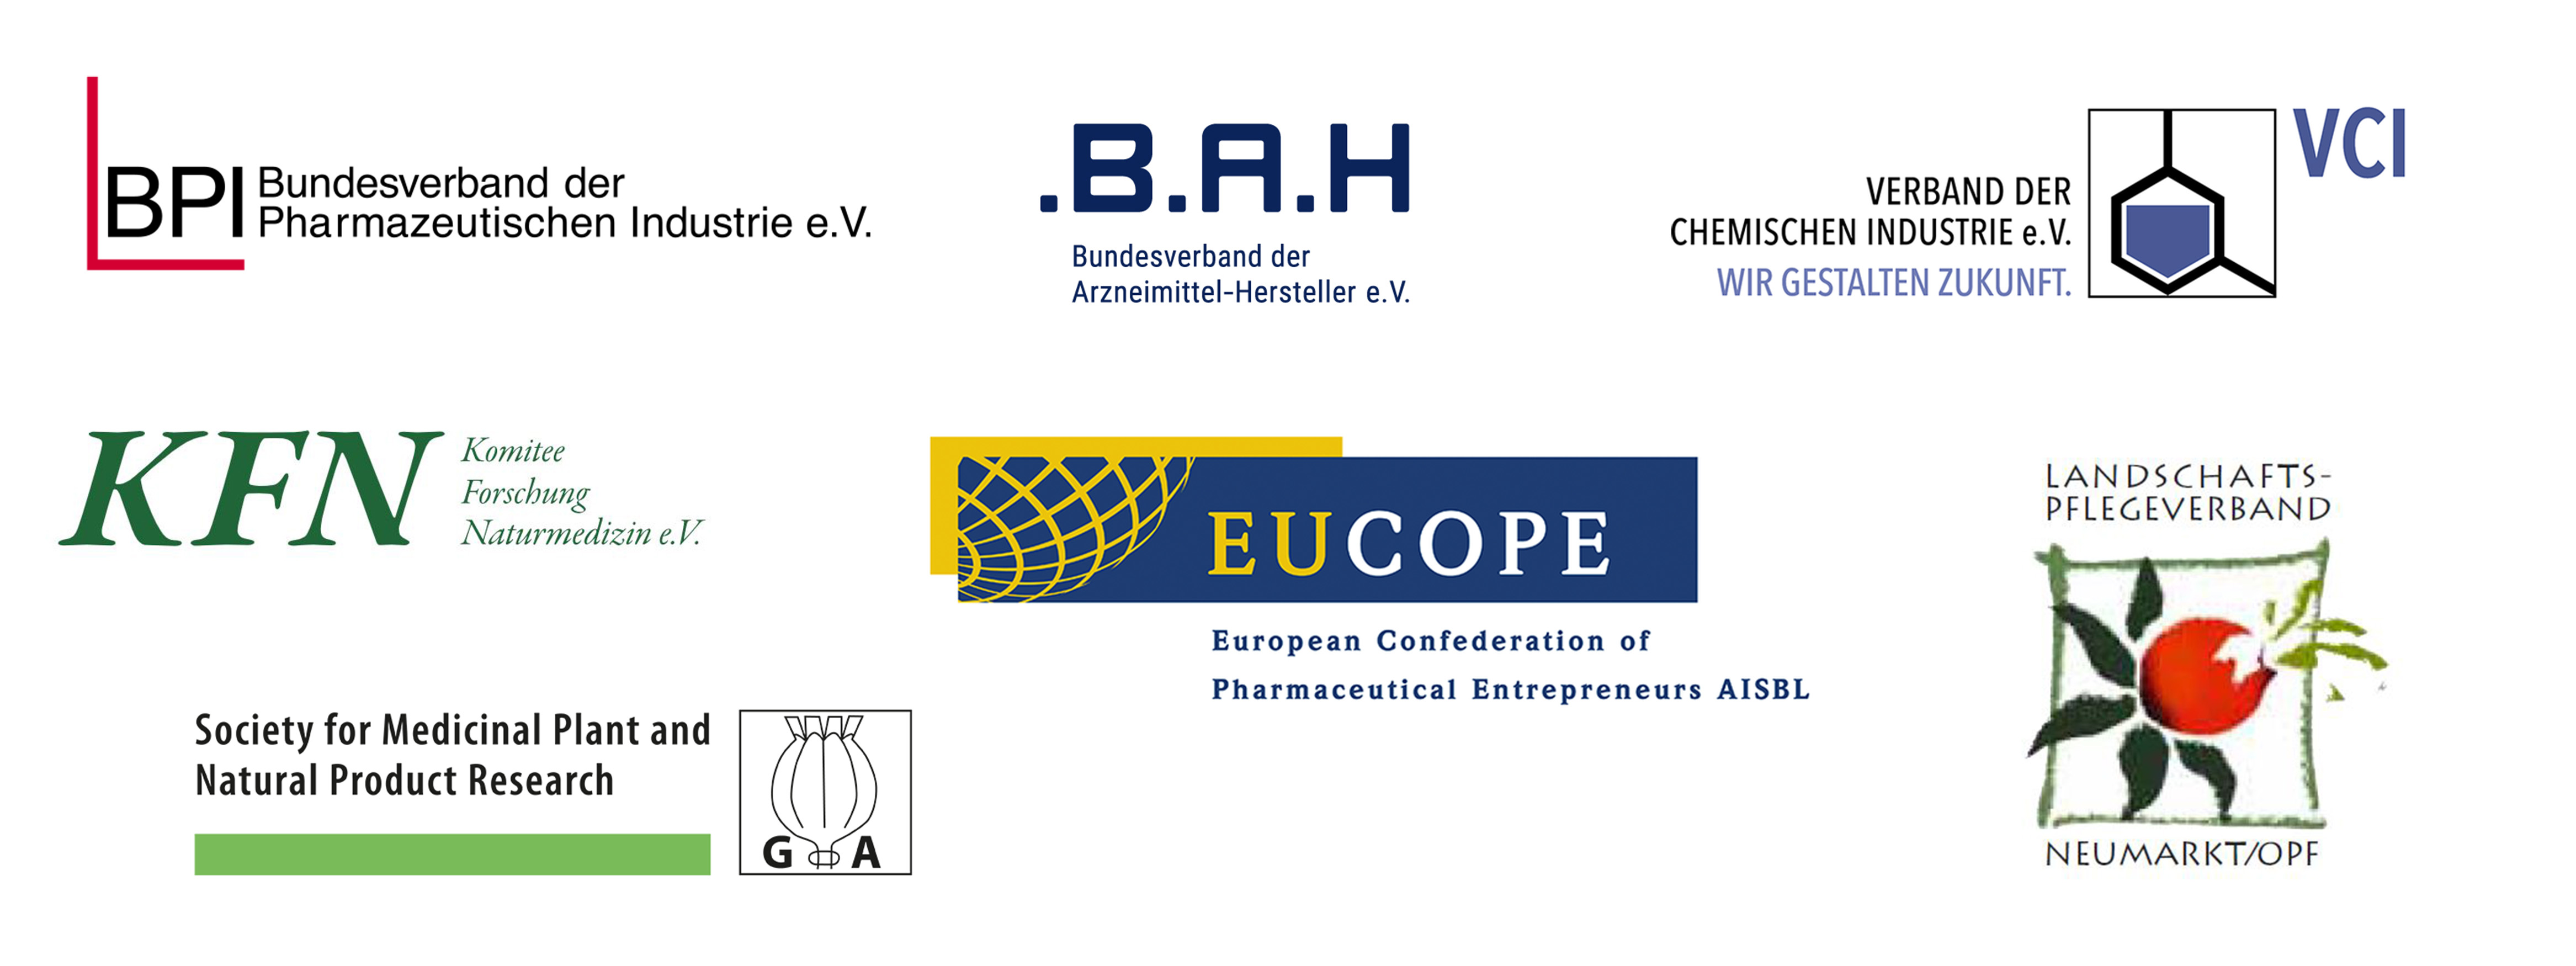 Bionorica ist Mitglied in verschiedenen Vereinigungen und Verbänden. Deren Logos sind hier abgebildet.